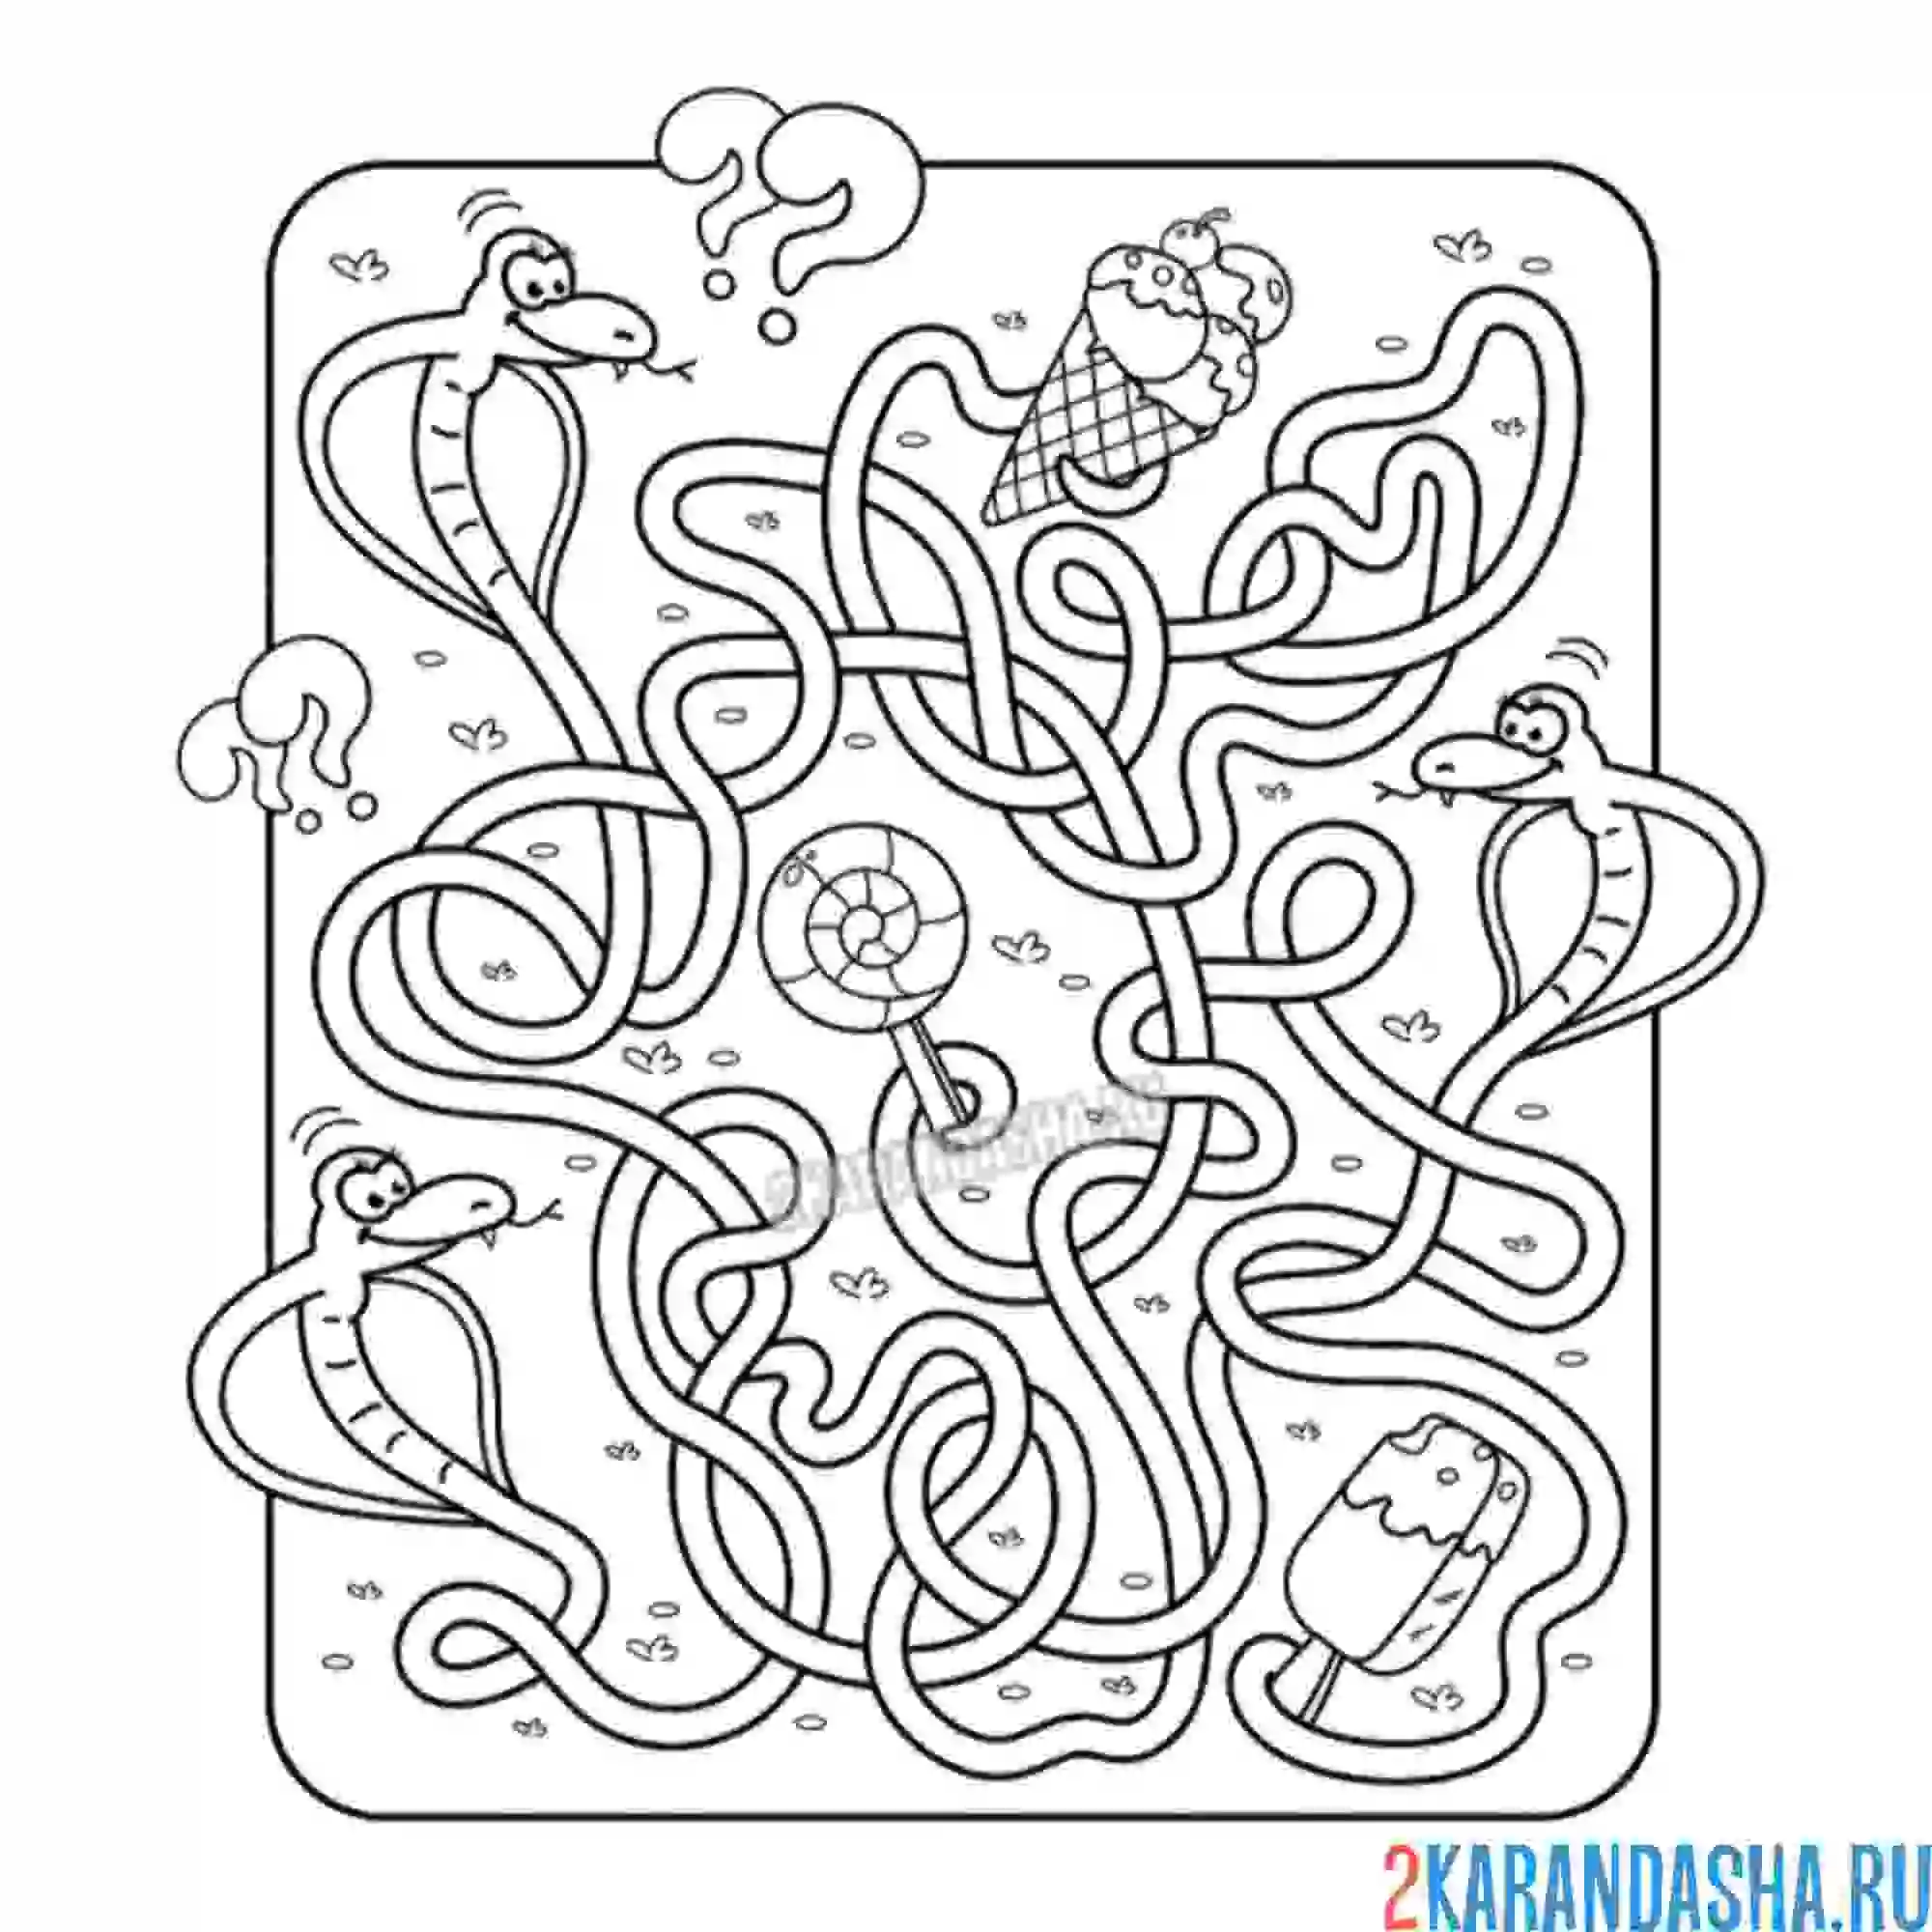 Раскраска лабиринт три змеи